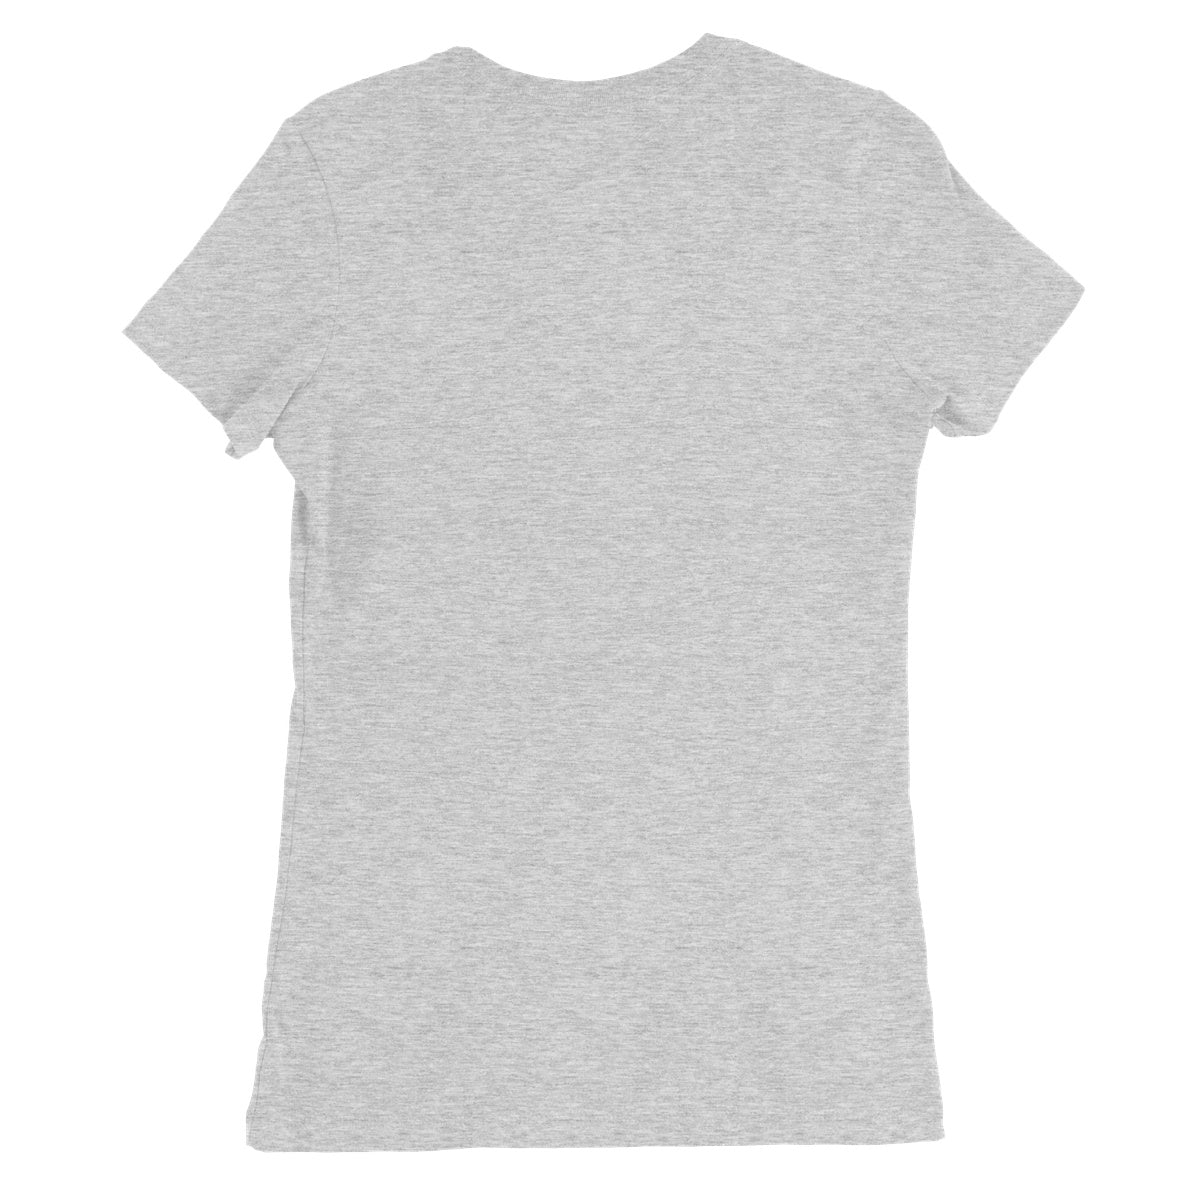 Eikthyrnir Valhalla Stag Women's Favourite T-Shirt